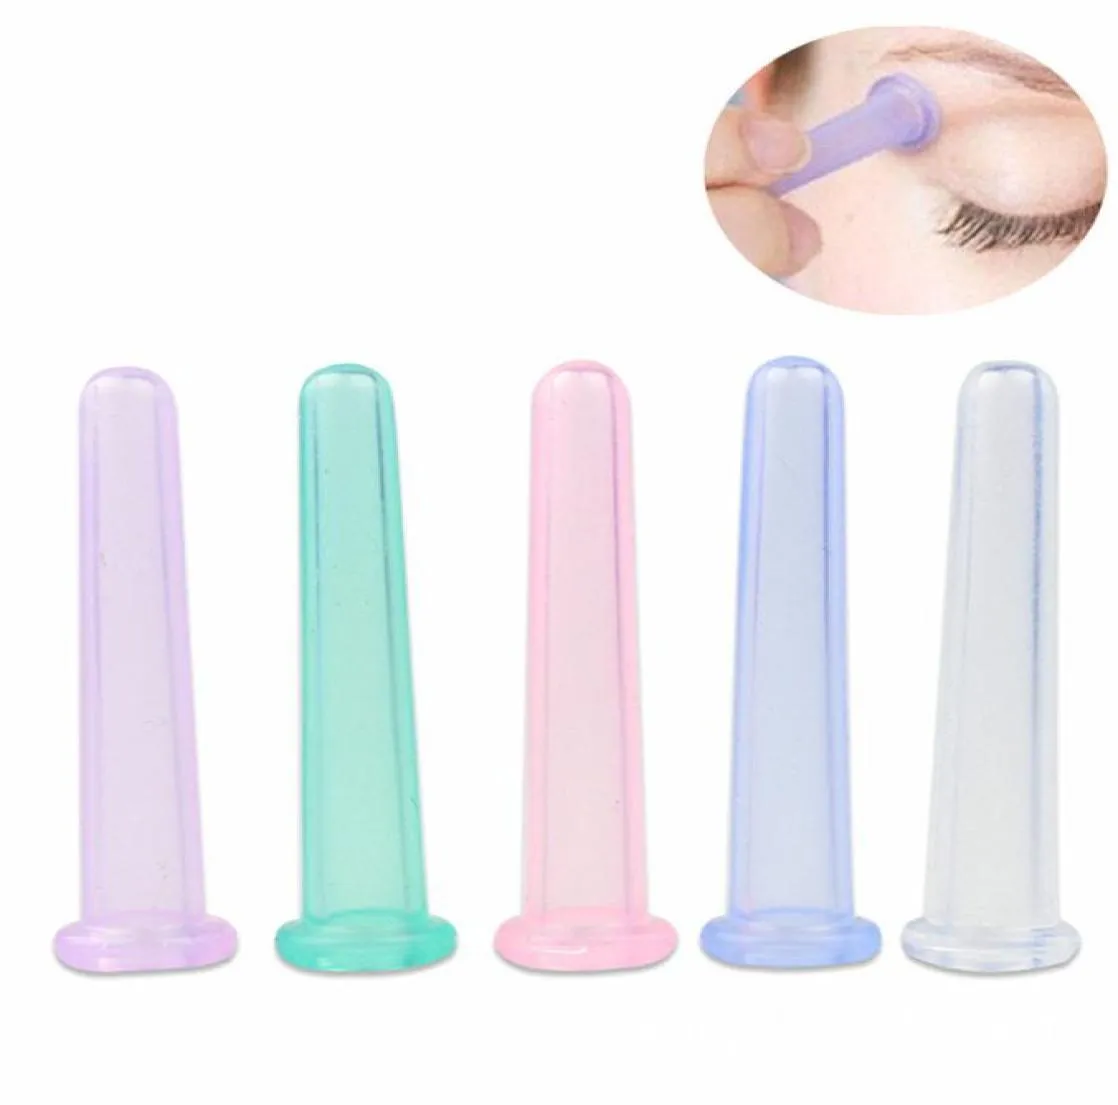 5 couleurs Eye Mini Massage en silicone tasse de silicone masseur facial Cupping Cup Face Eye Care Traitement Traitement 15 mm50 mm9240475